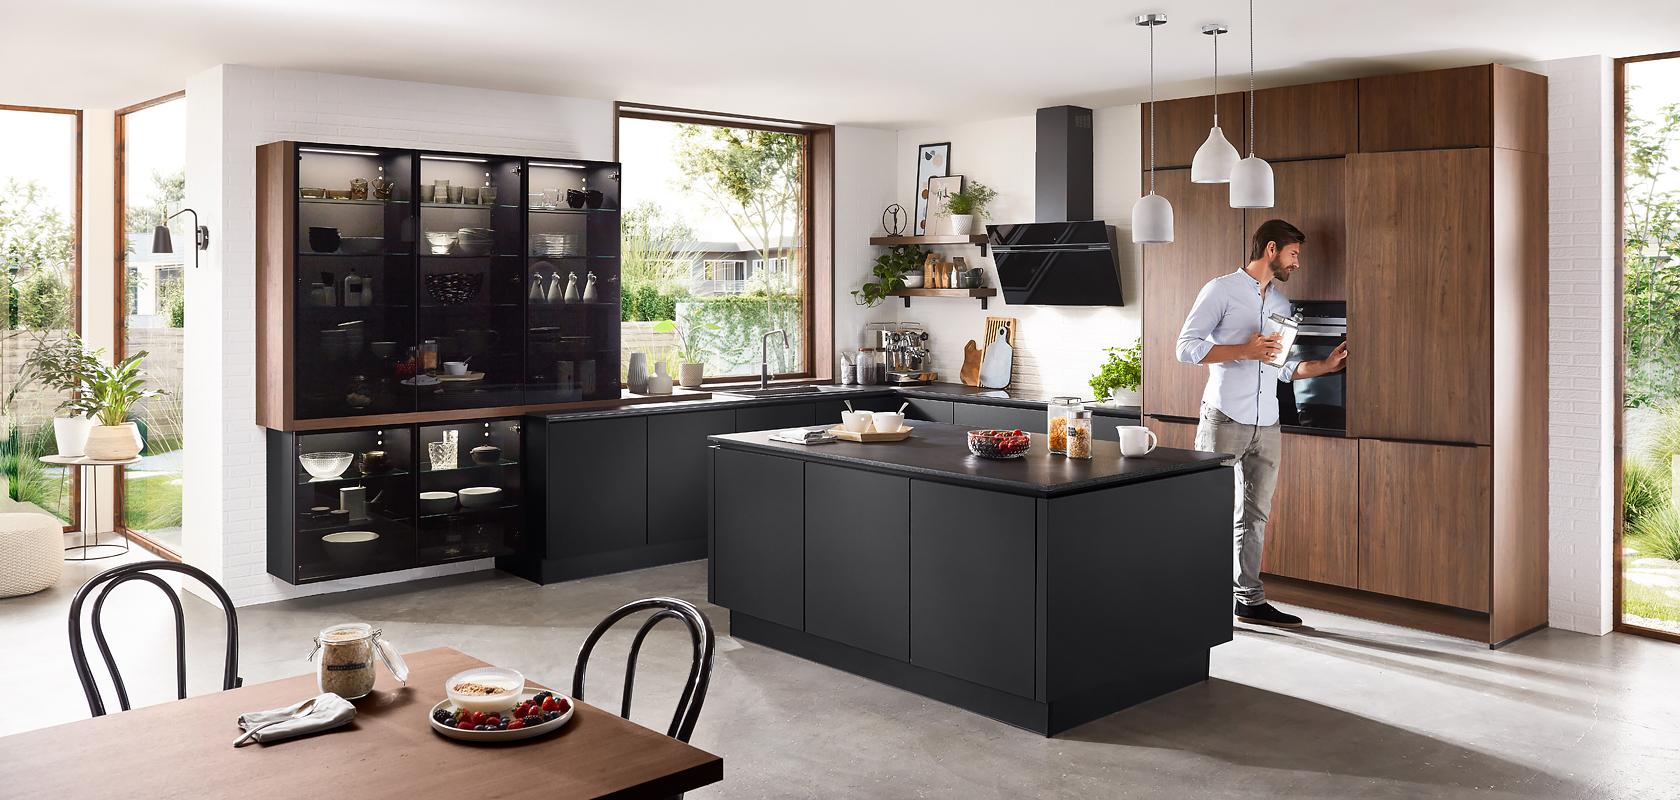 Moderne Kücheninnenräume mit eleganten schwarzen Schränken, Holzakzenten und einem Mann, der auf der Arbeitsplatte ein Getränk zubereitet, schaffen eine gemütliche und dennoch zeitgemäße Atmosphäre.